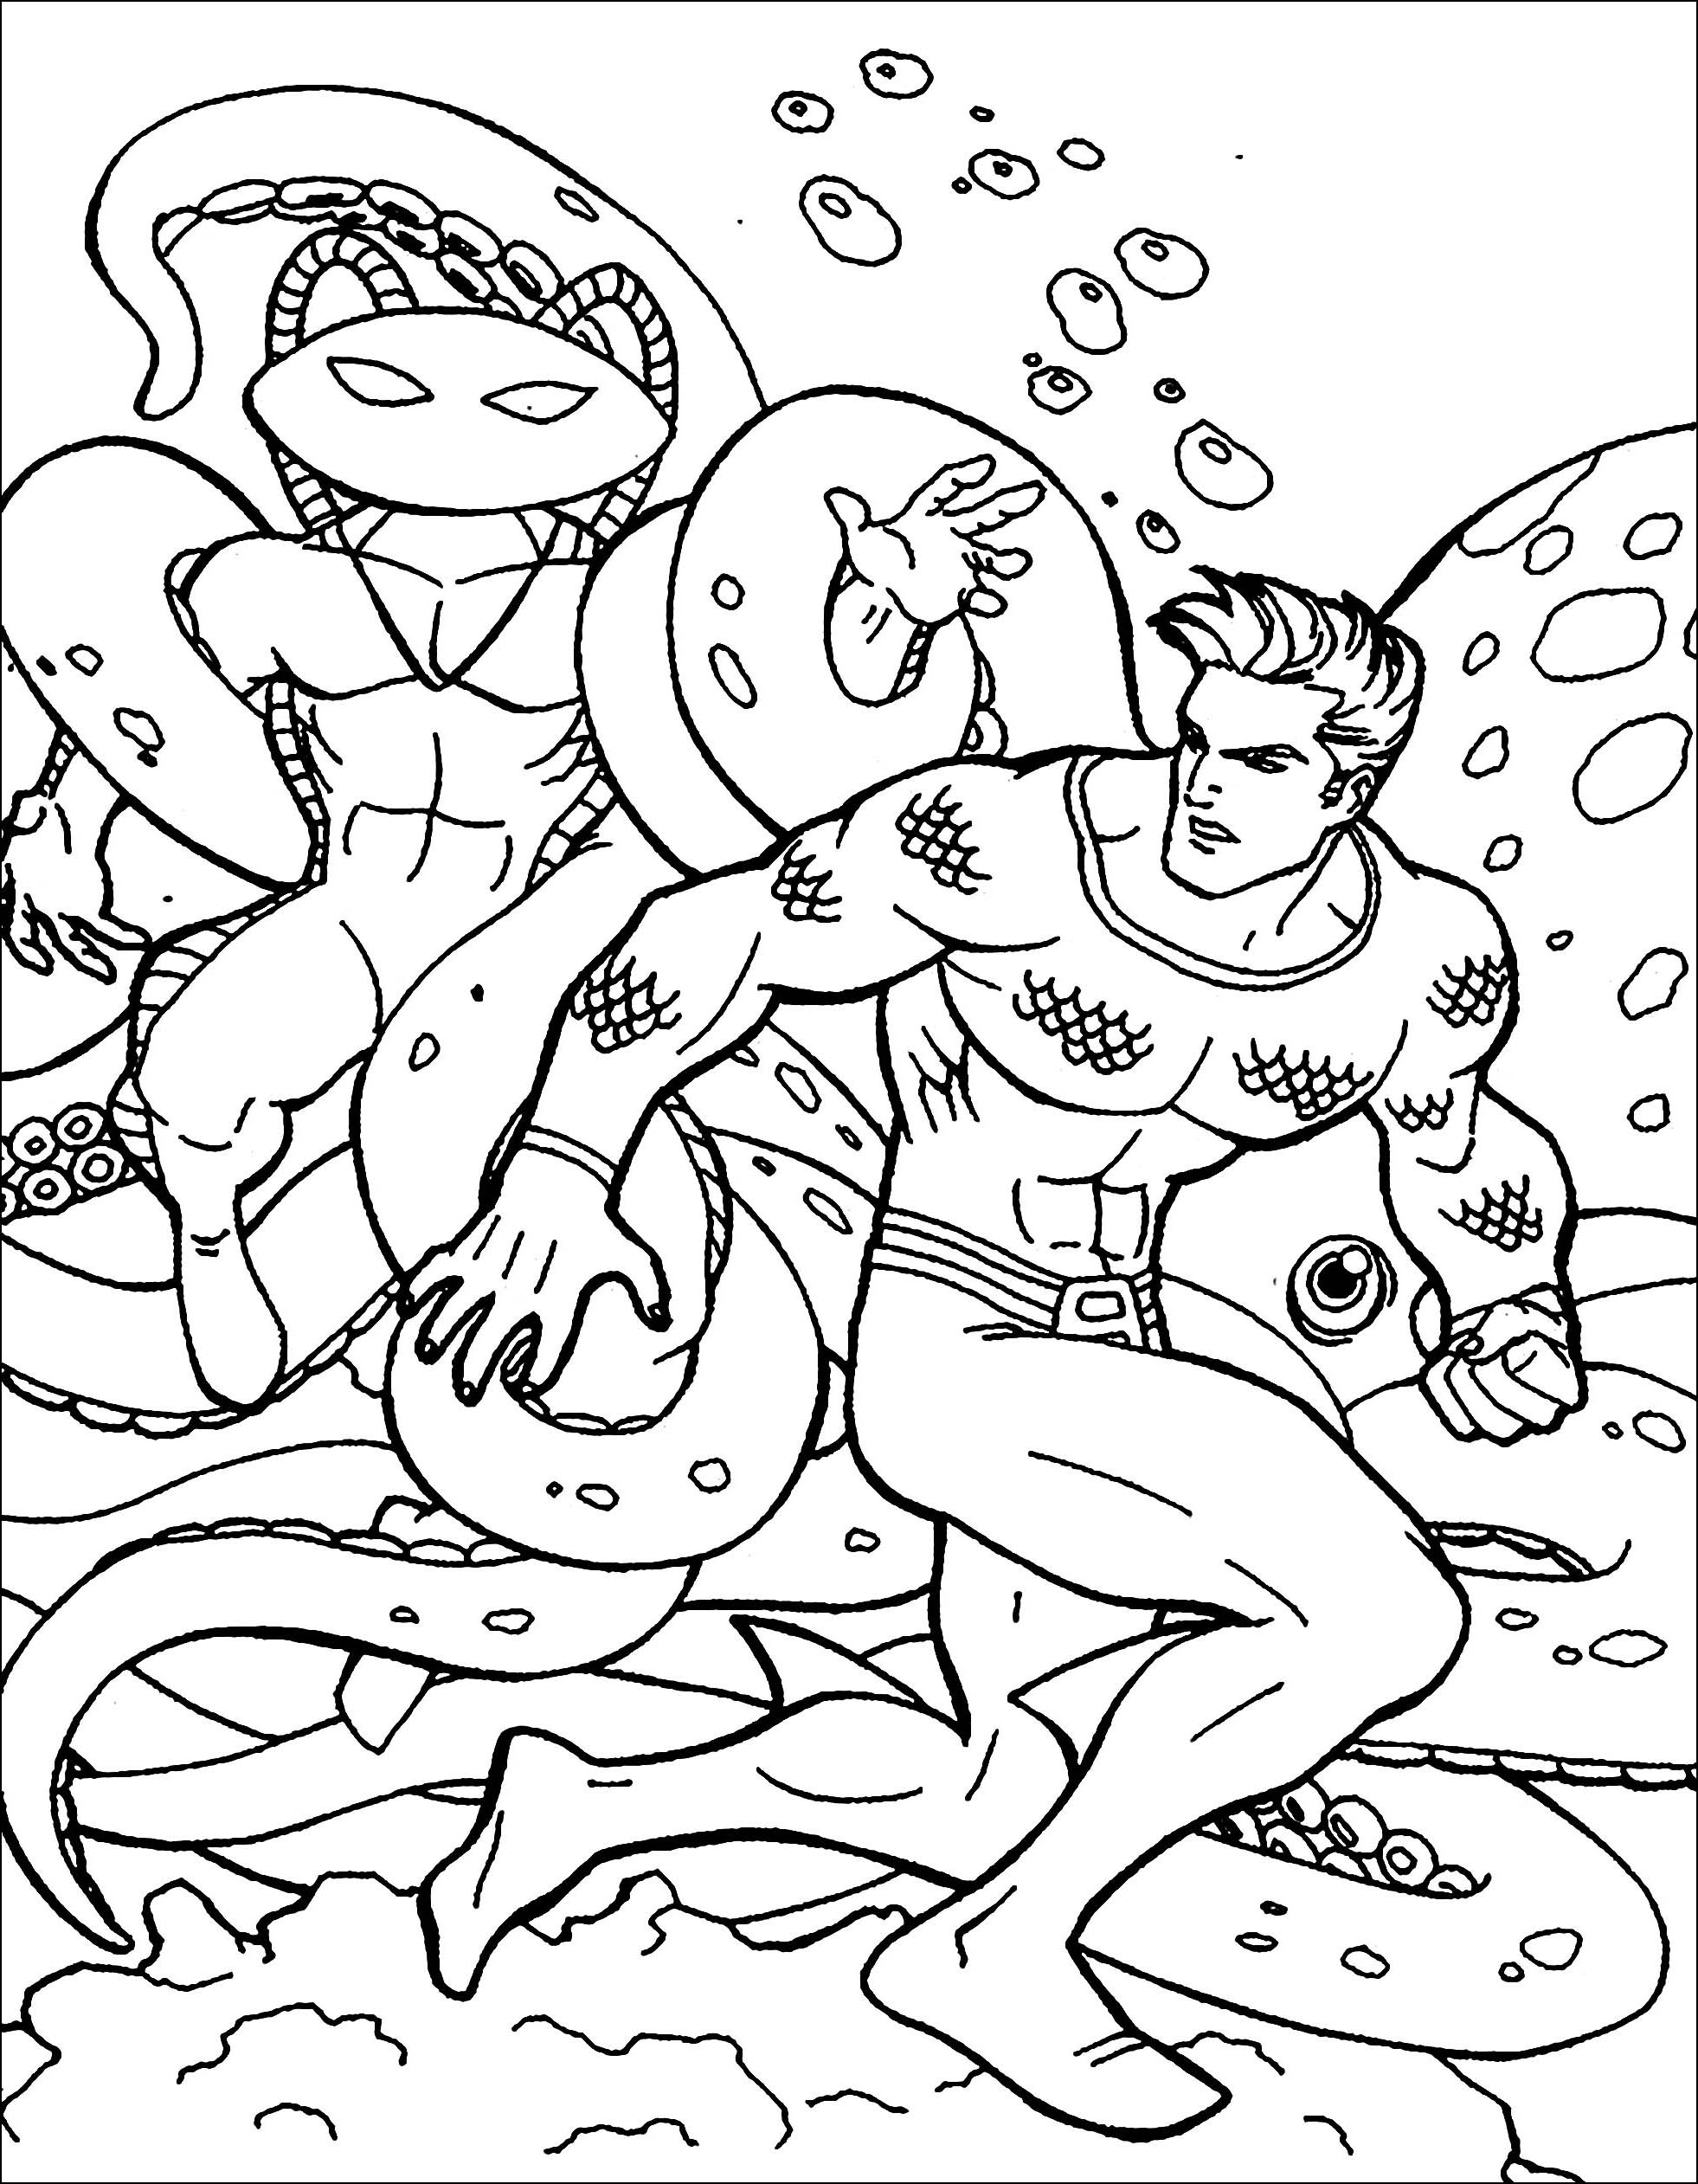 Divertidas páginas para colorear de Aquaman para imprimir y colorear